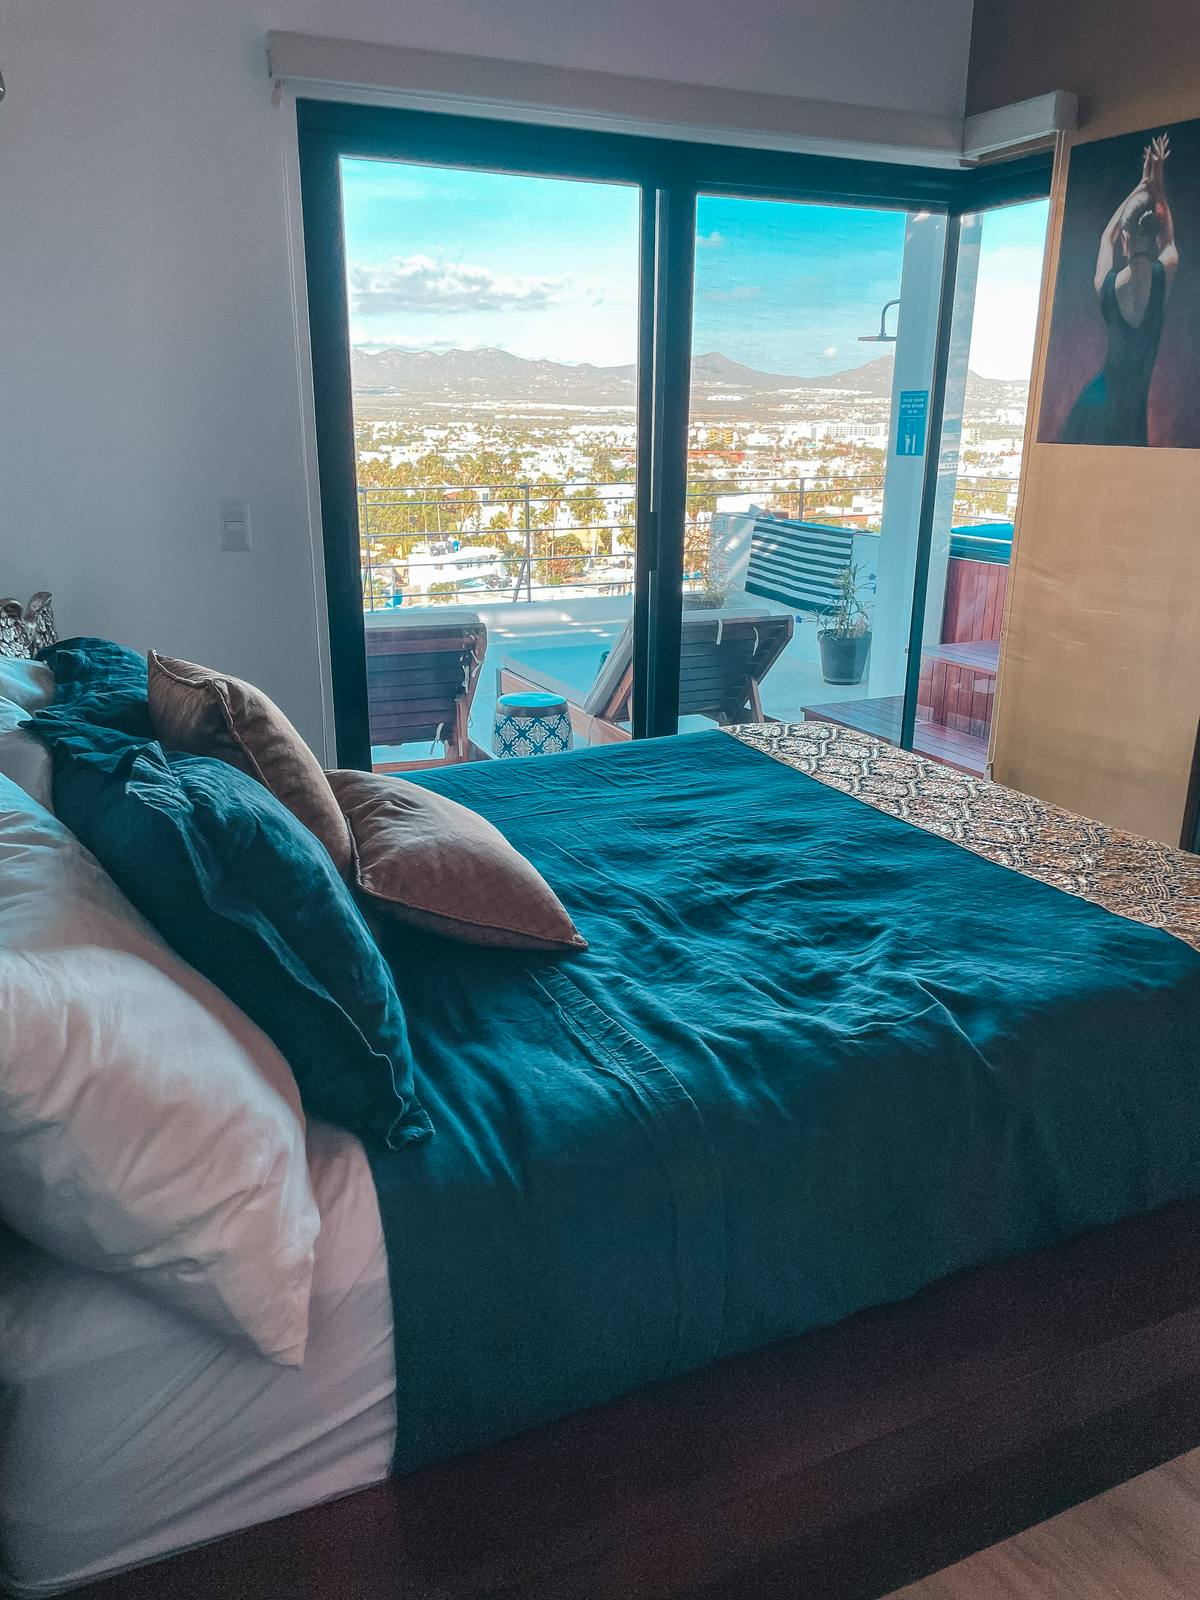 VRBO in Cabo bedroom